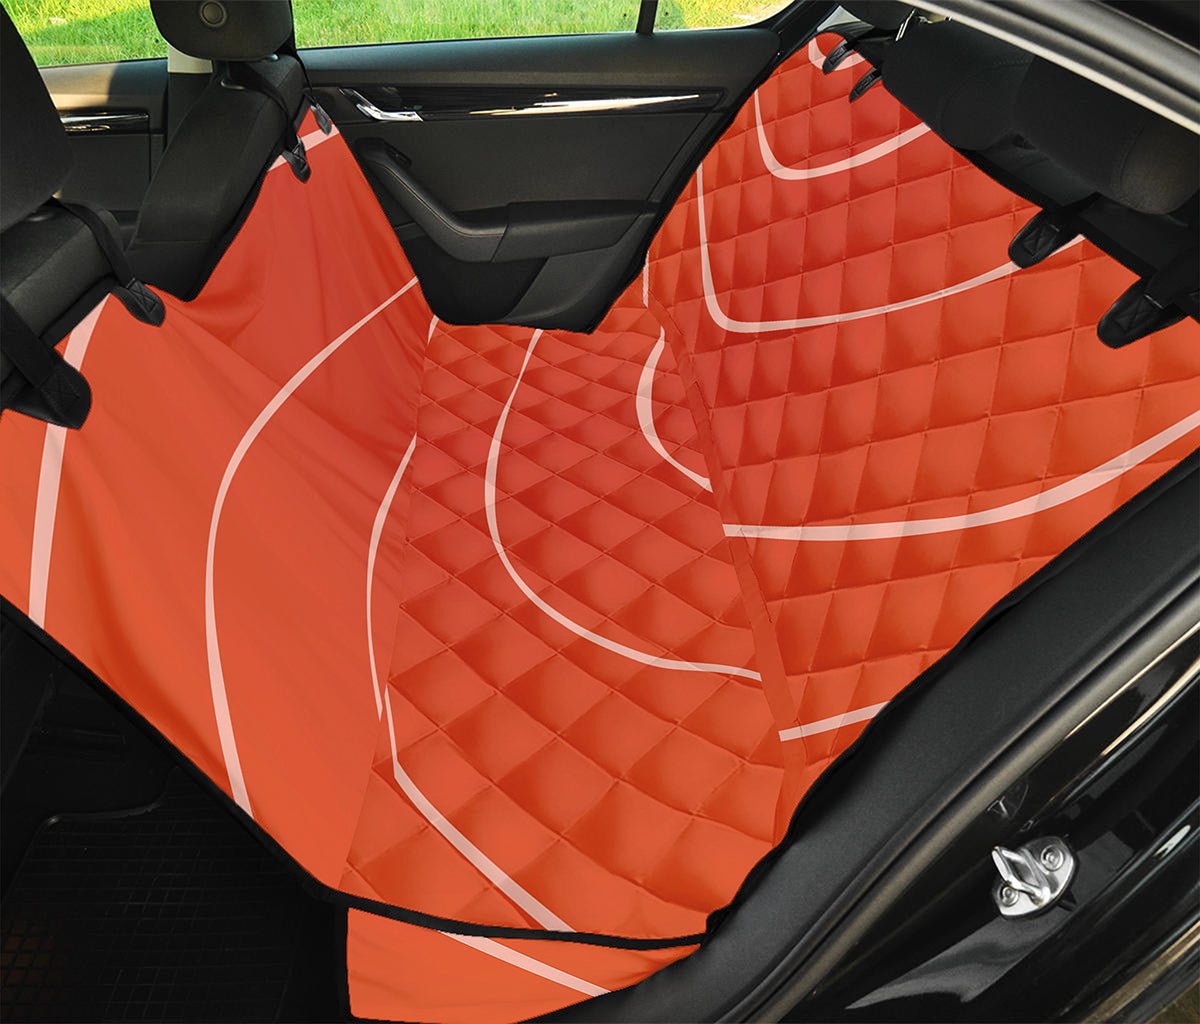 Salmon Artwork Print Pet Car Back Seat Cover